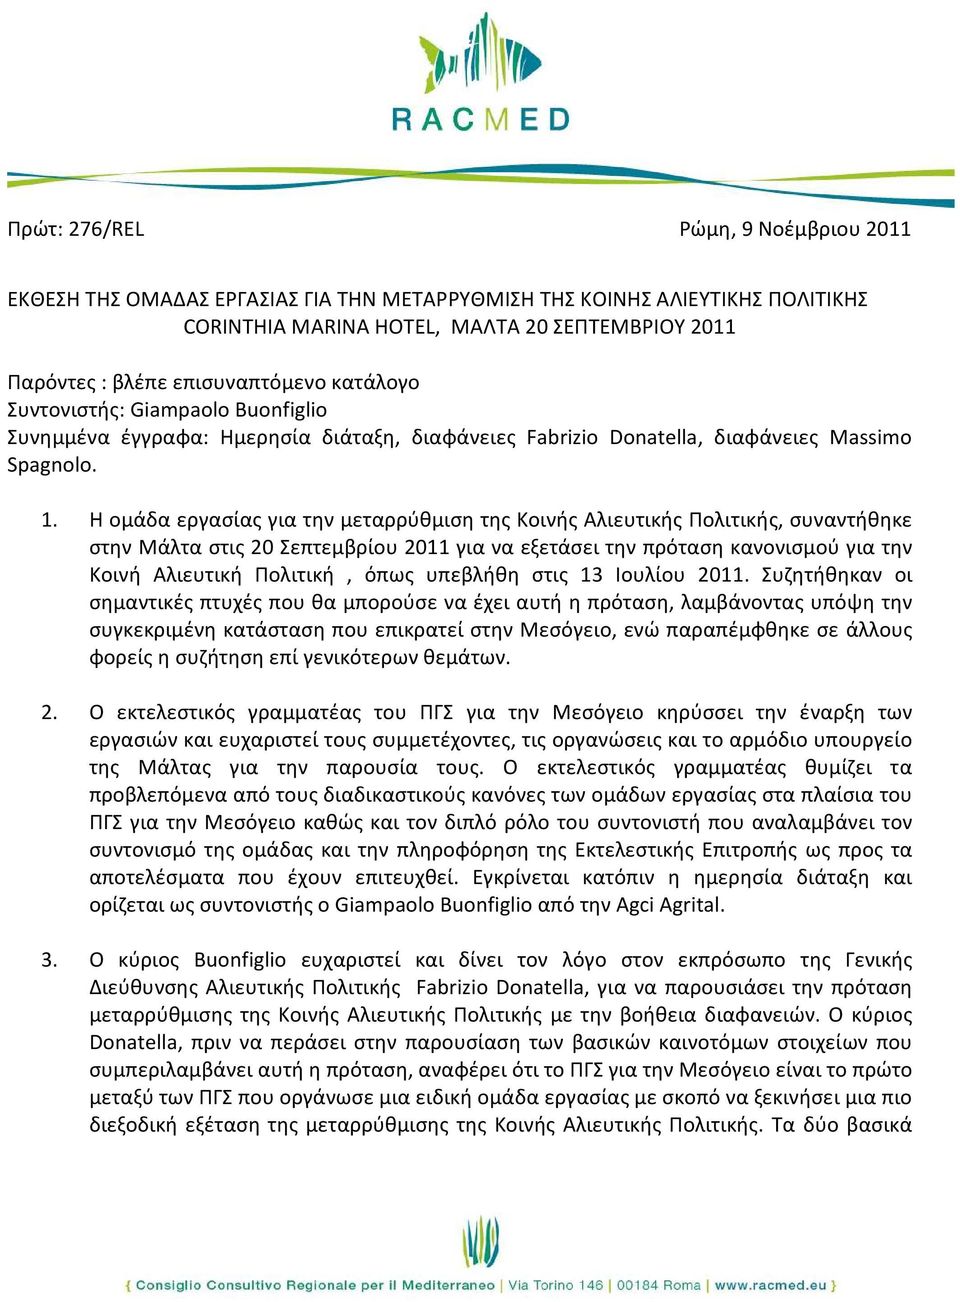 Η ομάδα εργασίας για την μεταρρύθμιση της Κοινής Αλιευτικής Πολιτικής, συναντήθηκε στην Μάλτα στις 20 Σεπτεμβρίου 2011 για να εξετάσει την πρόταση κανονισμού για την Κοινή Αλιευτική Πολιτική, όπως